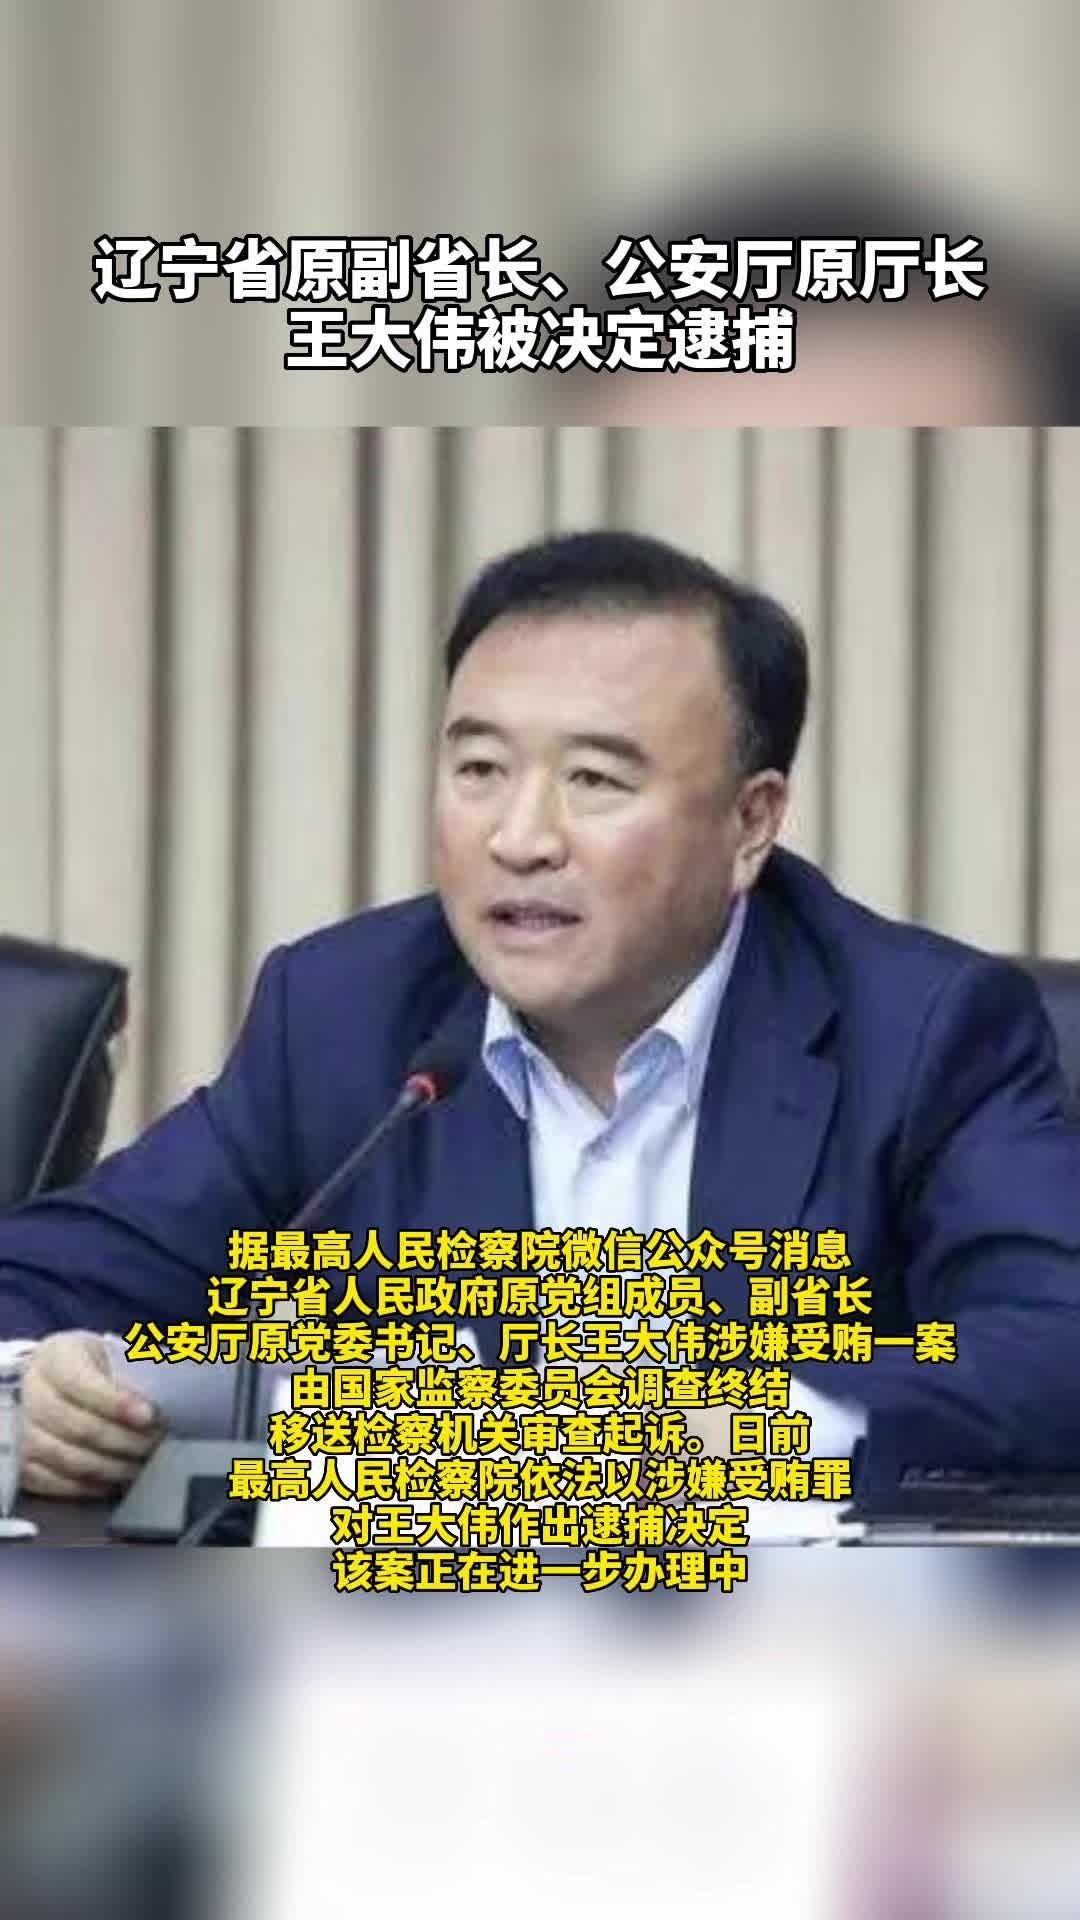 私藏大量涉密材料 中国公安部原副部长孙力军被逮捕 -6park.com